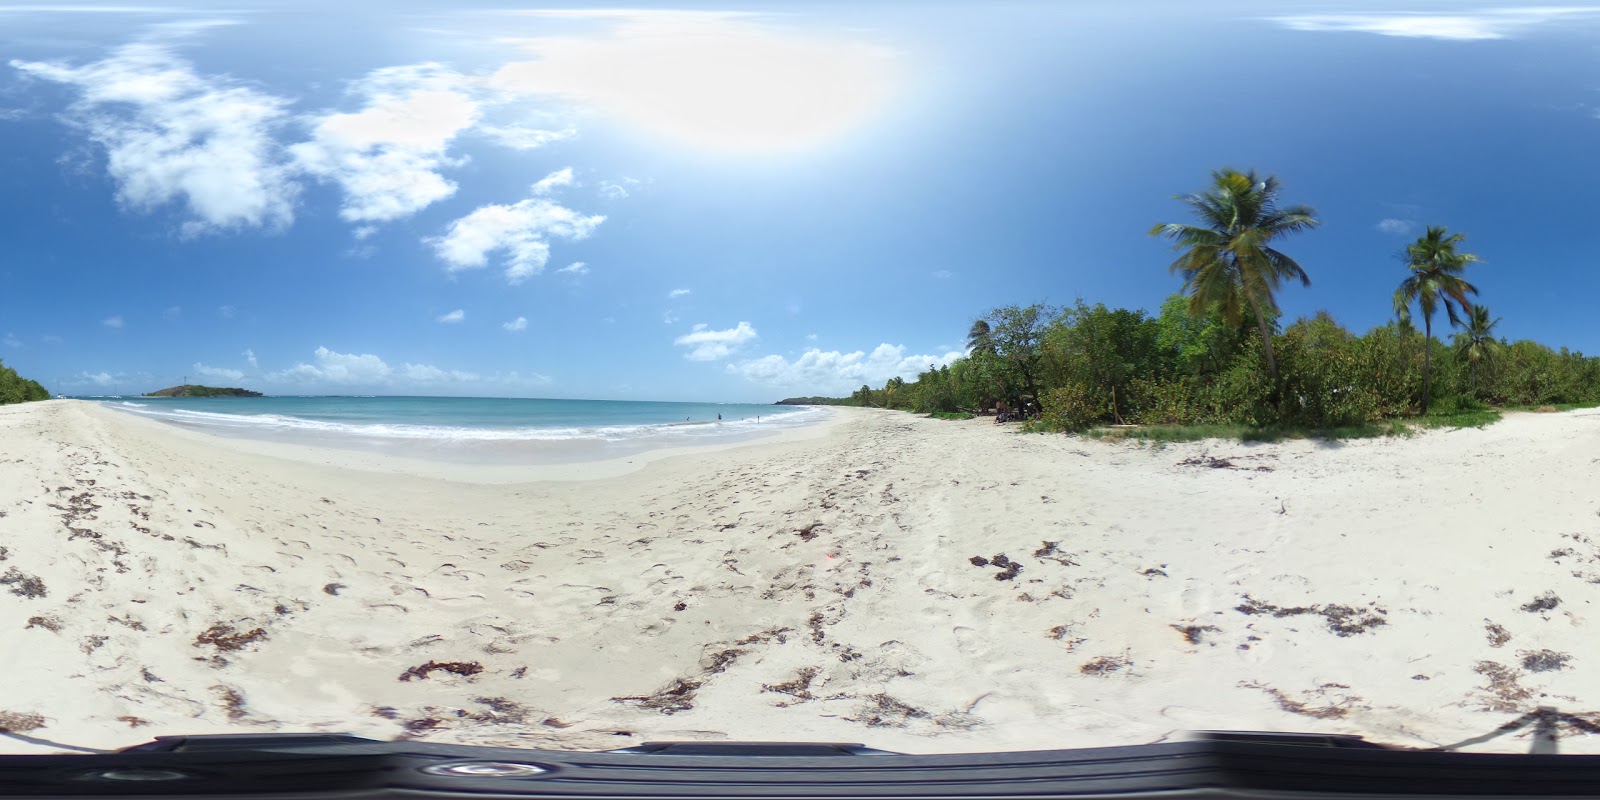 Foto de Grande terre beach - lugar popular entre los conocedores del relax